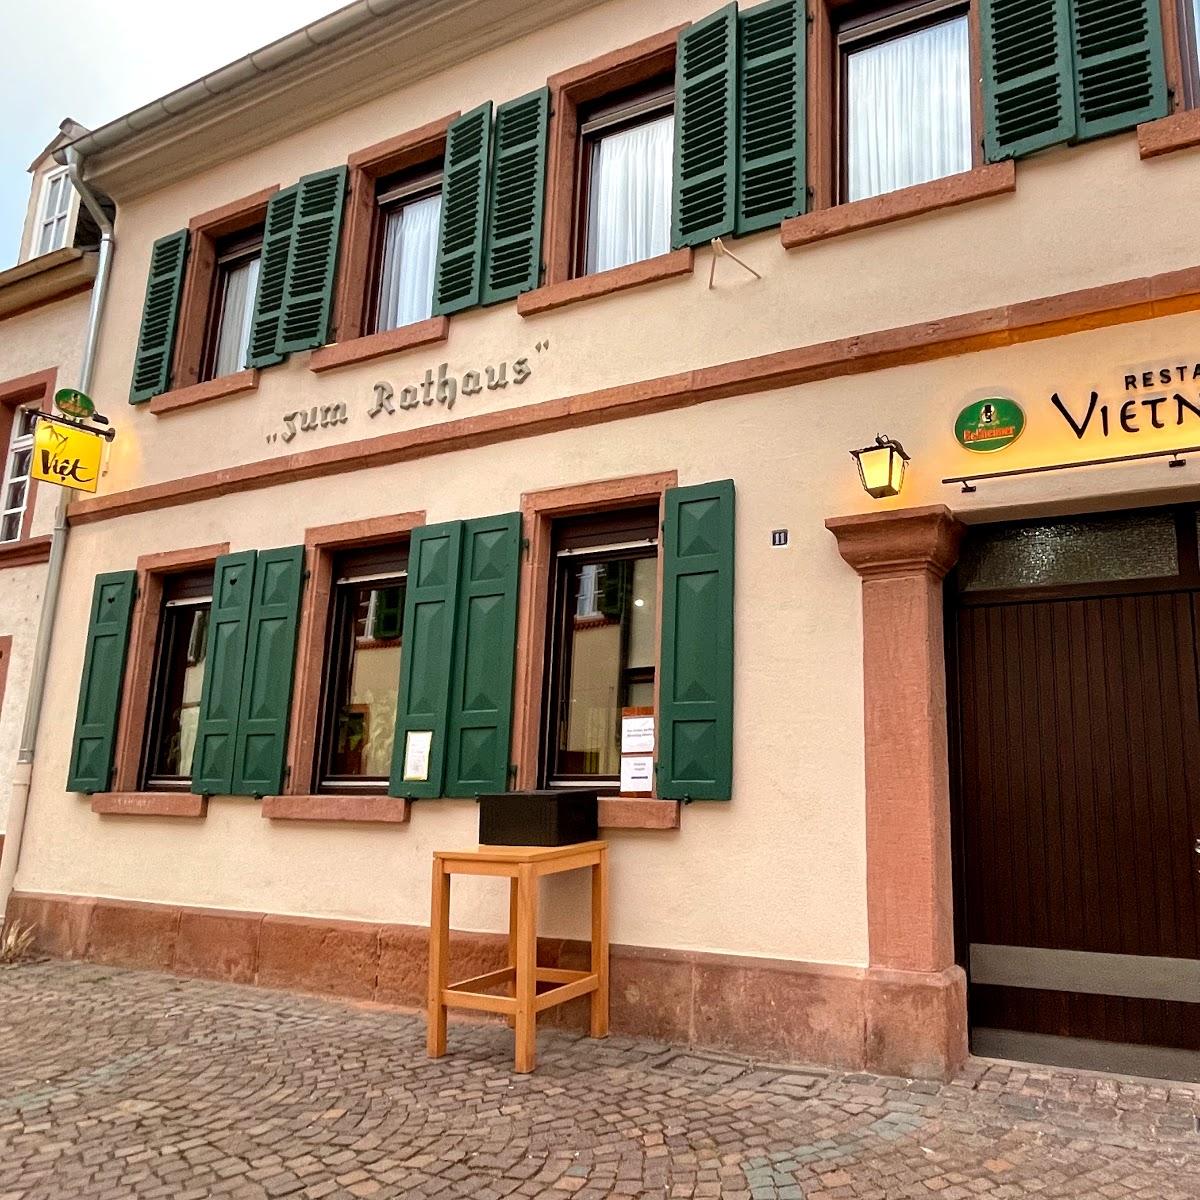 Restaurant "Viet" in  Weinstraße